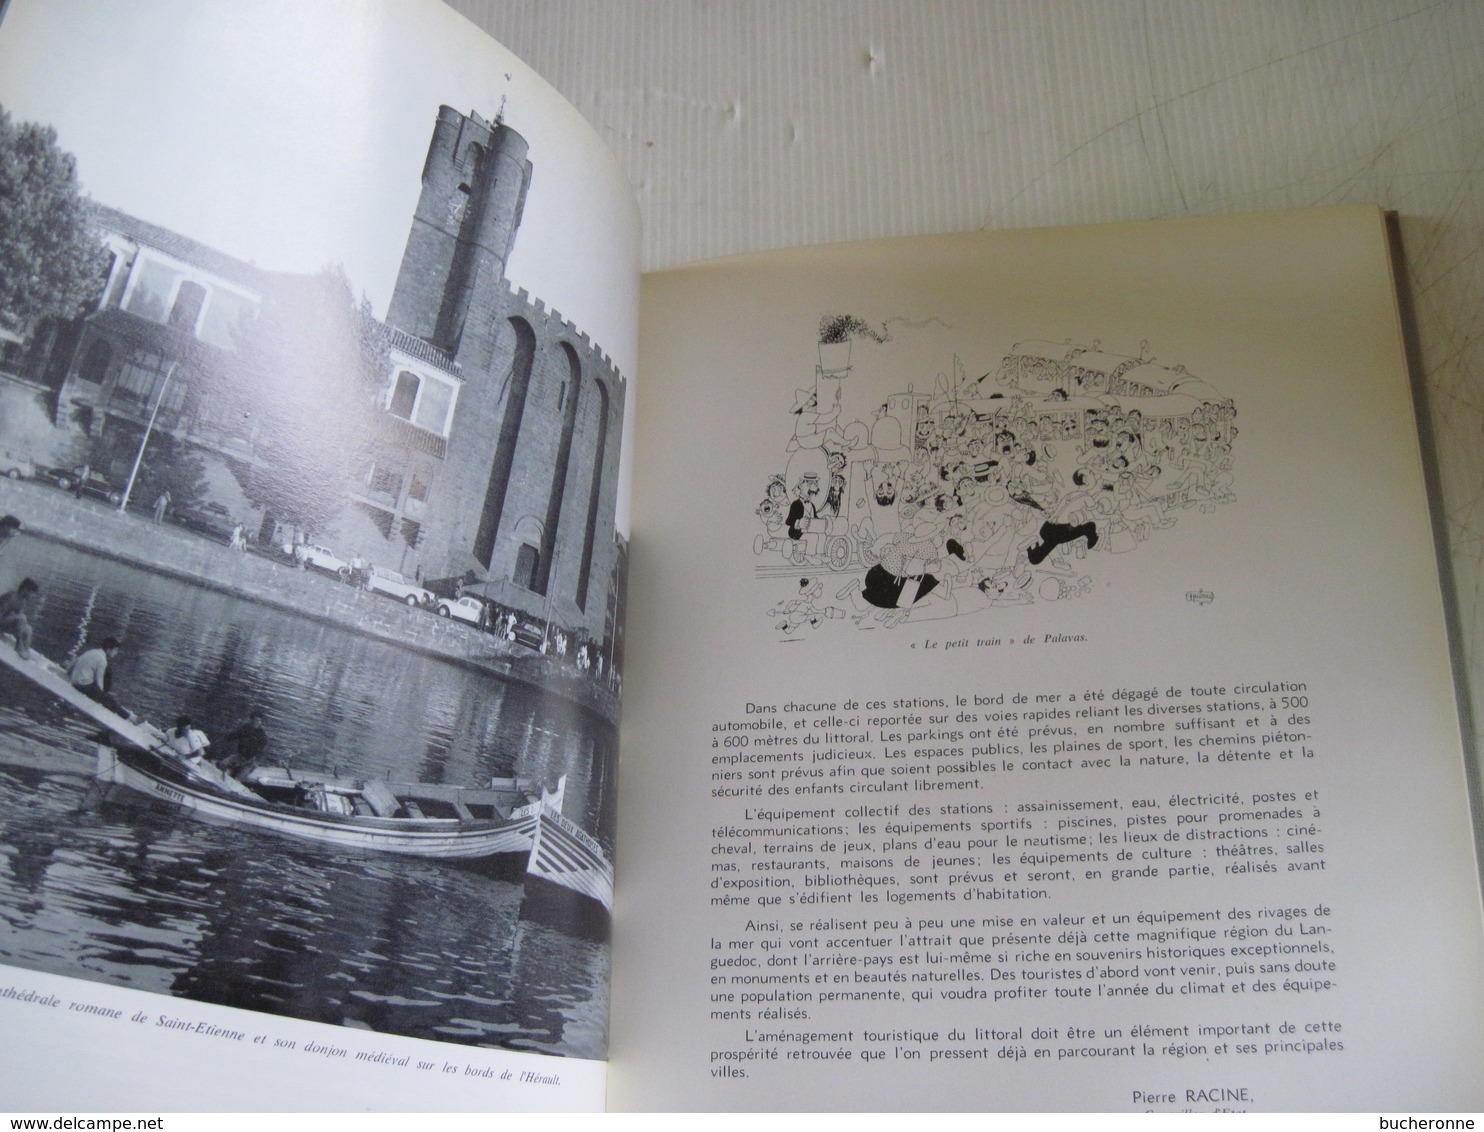 L'HERAULT RICHESSES de FRANCE 1966 N° 69 nomreuses photos lette Georges Brassens  une page déchirée photo toile décoloré